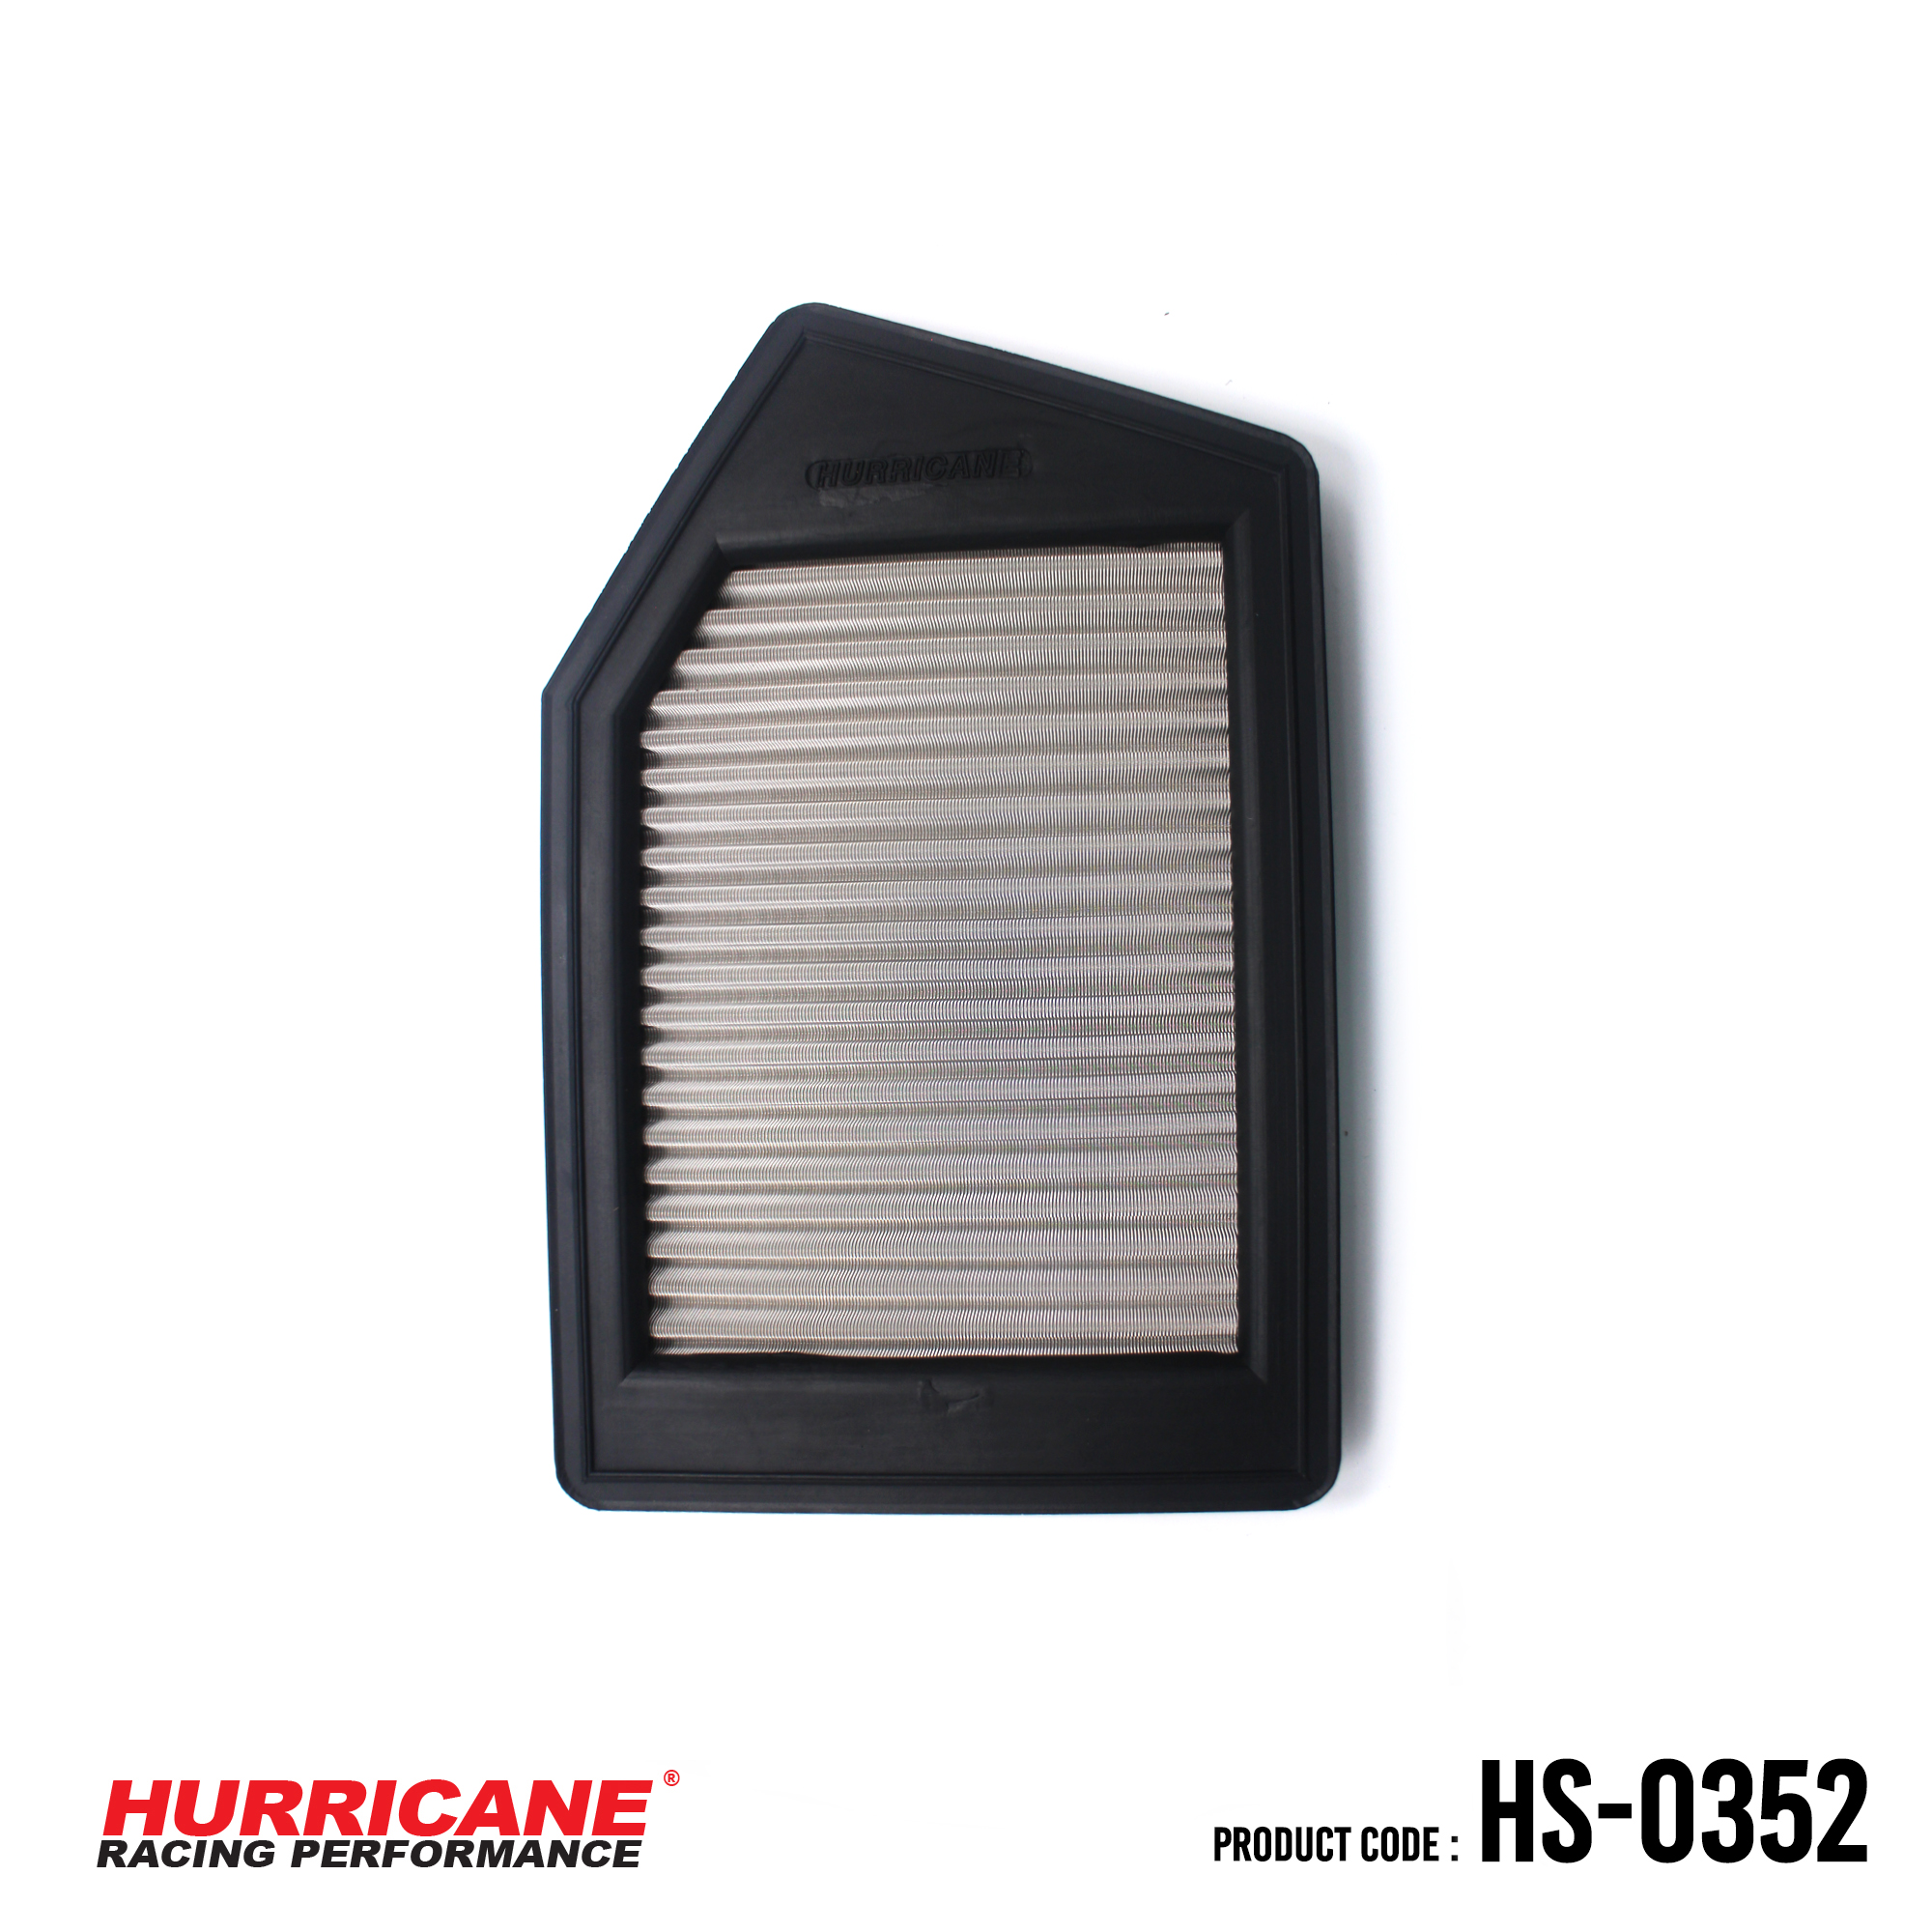 HURRICANE STAINLESS STEEL AIR FILTER FOR HS-0352 Honda